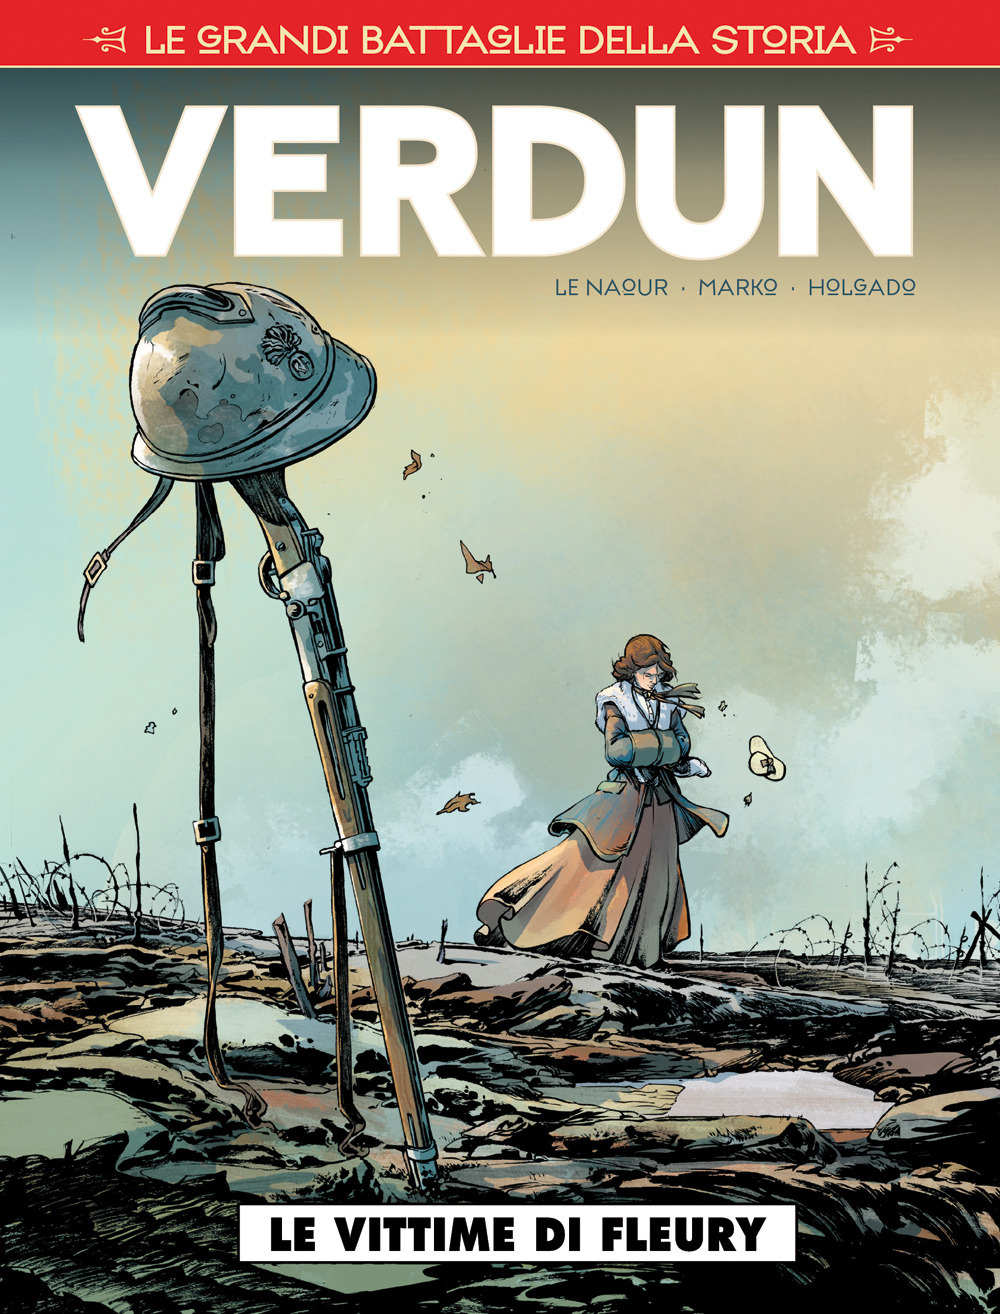 Le grandi battaglie della storia. Vol. 9: Verdun. I fucilati di Fleury